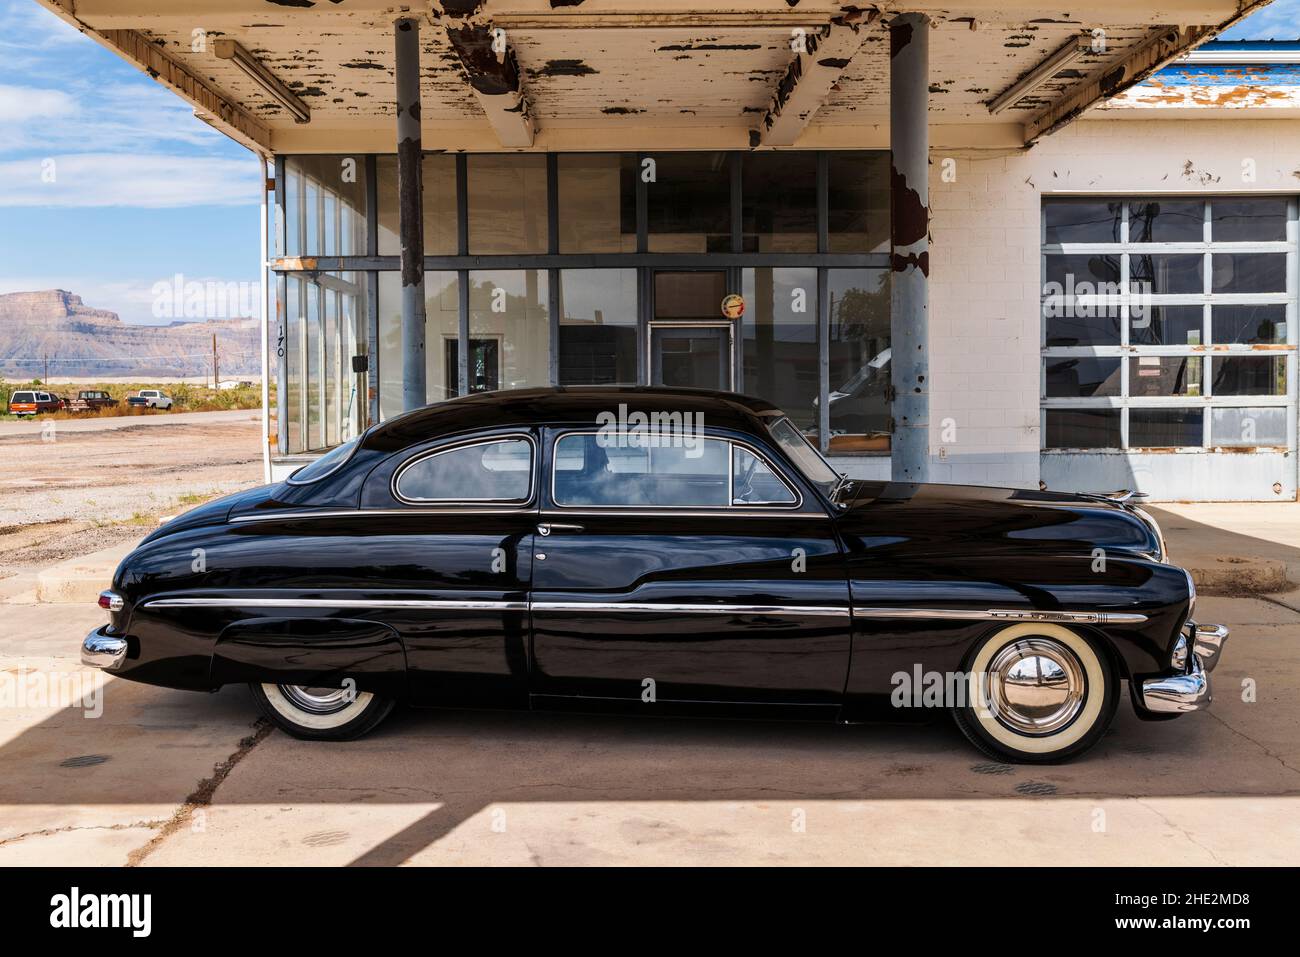 Automobile noire au mercure magnifiquement restaurée; Green River; Utah; États-Unis Banque D'Images